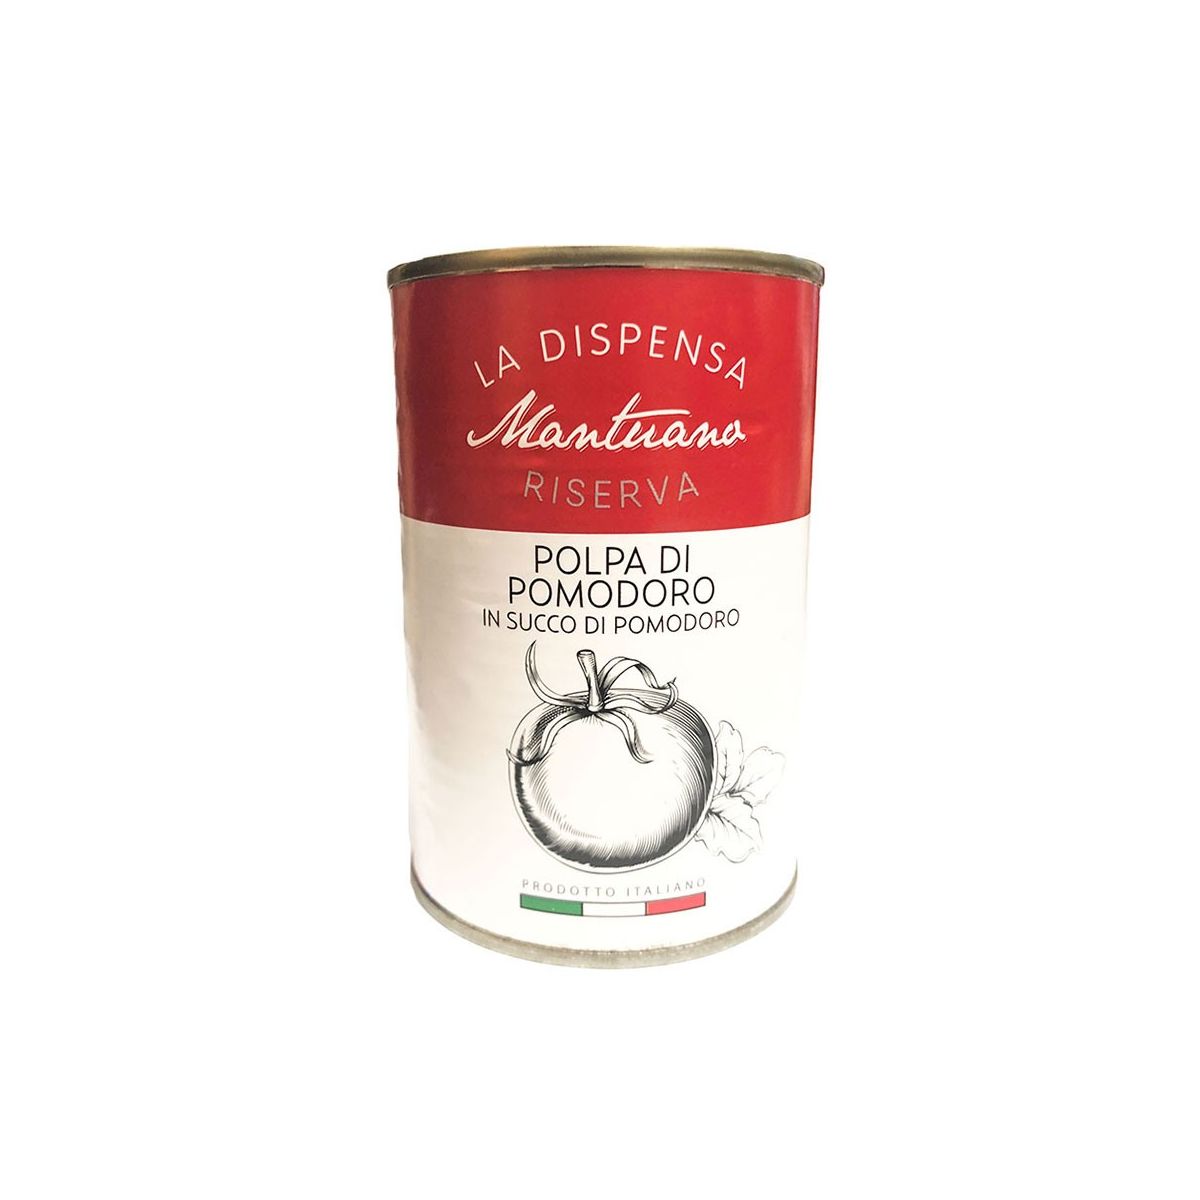 Polpa di pomodoro in succo di pomodoro 100% Italiana - 400g